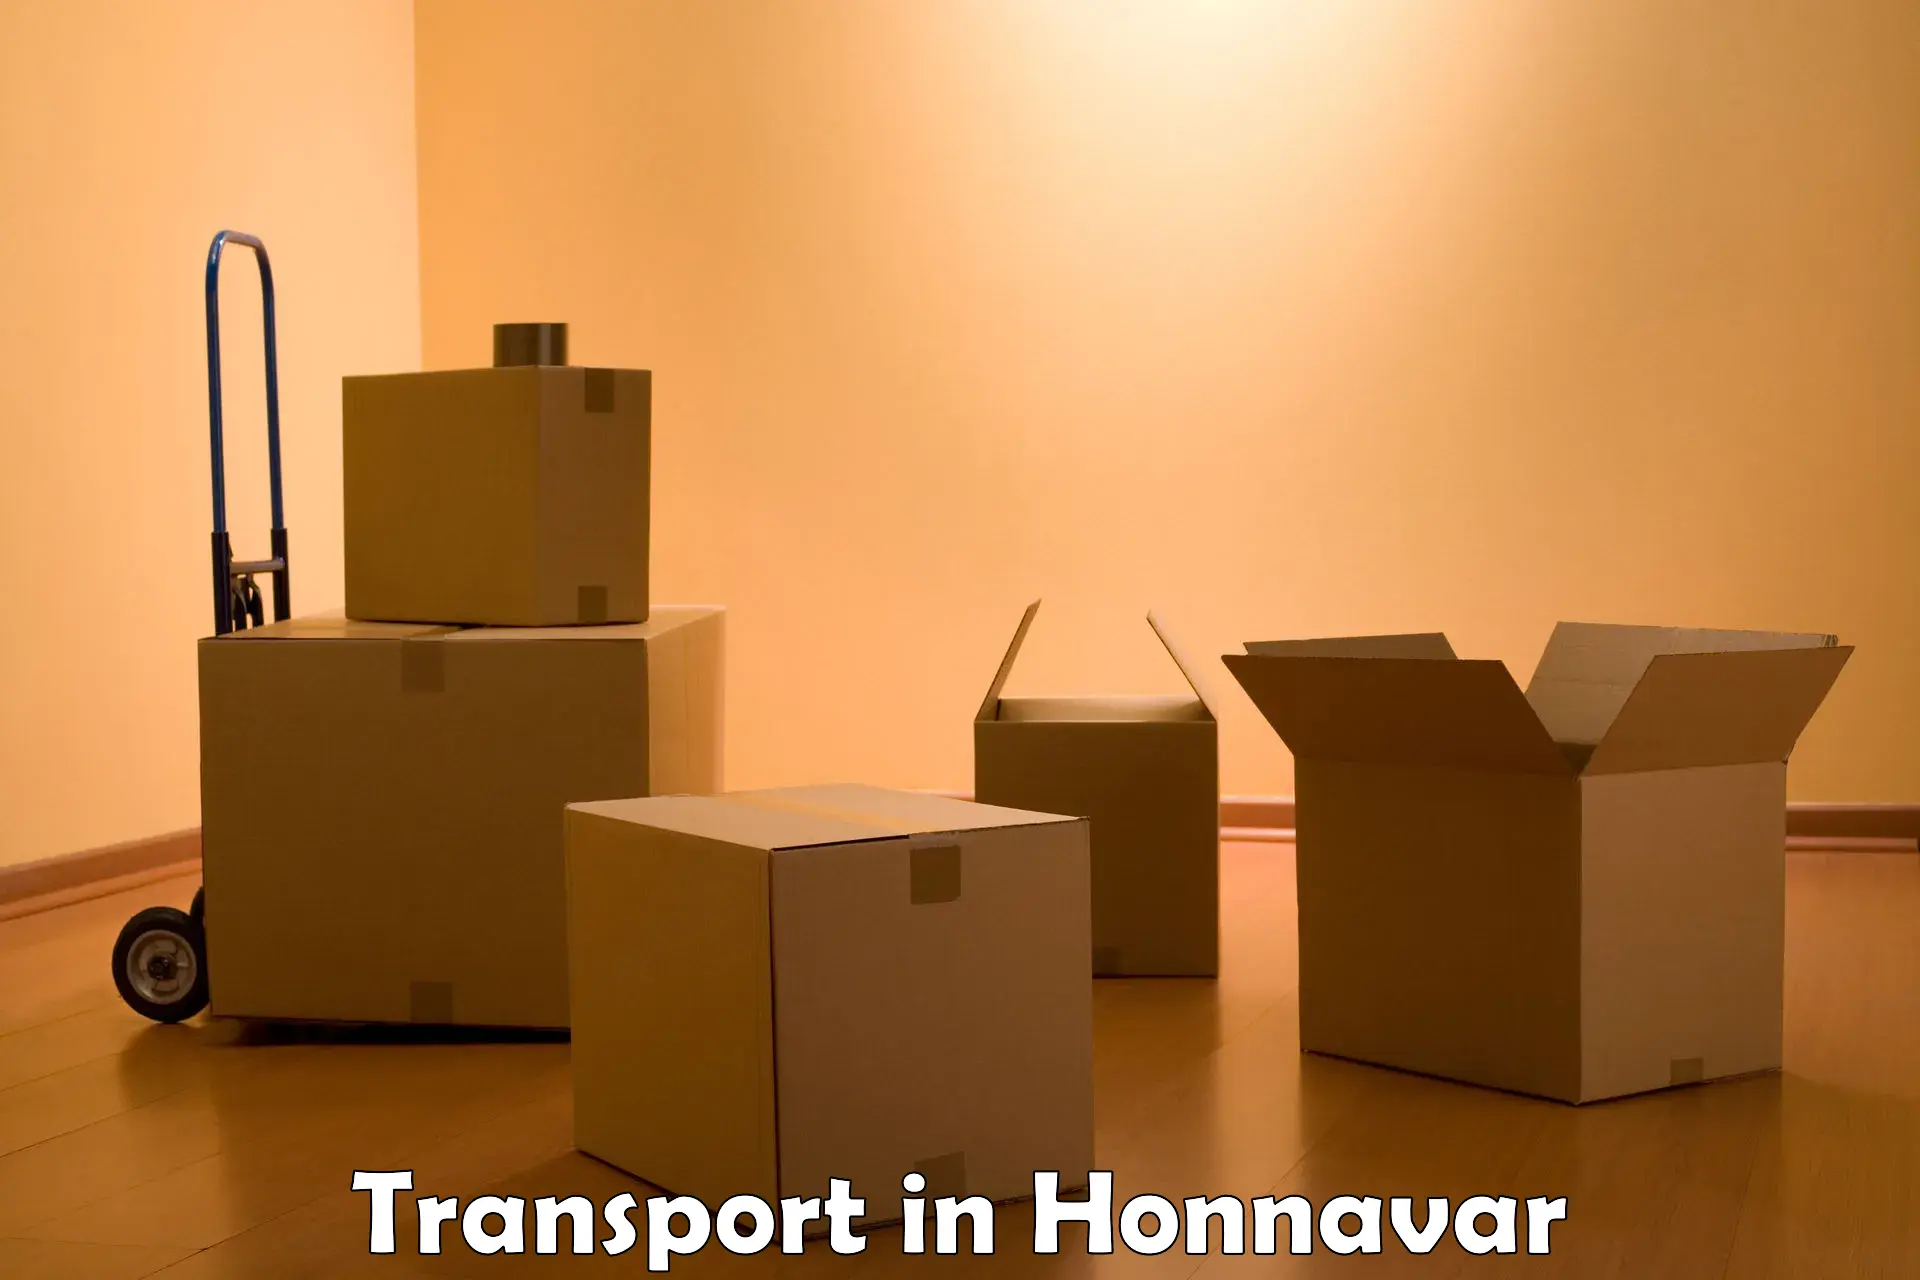 Parcel transport services in Honnavar